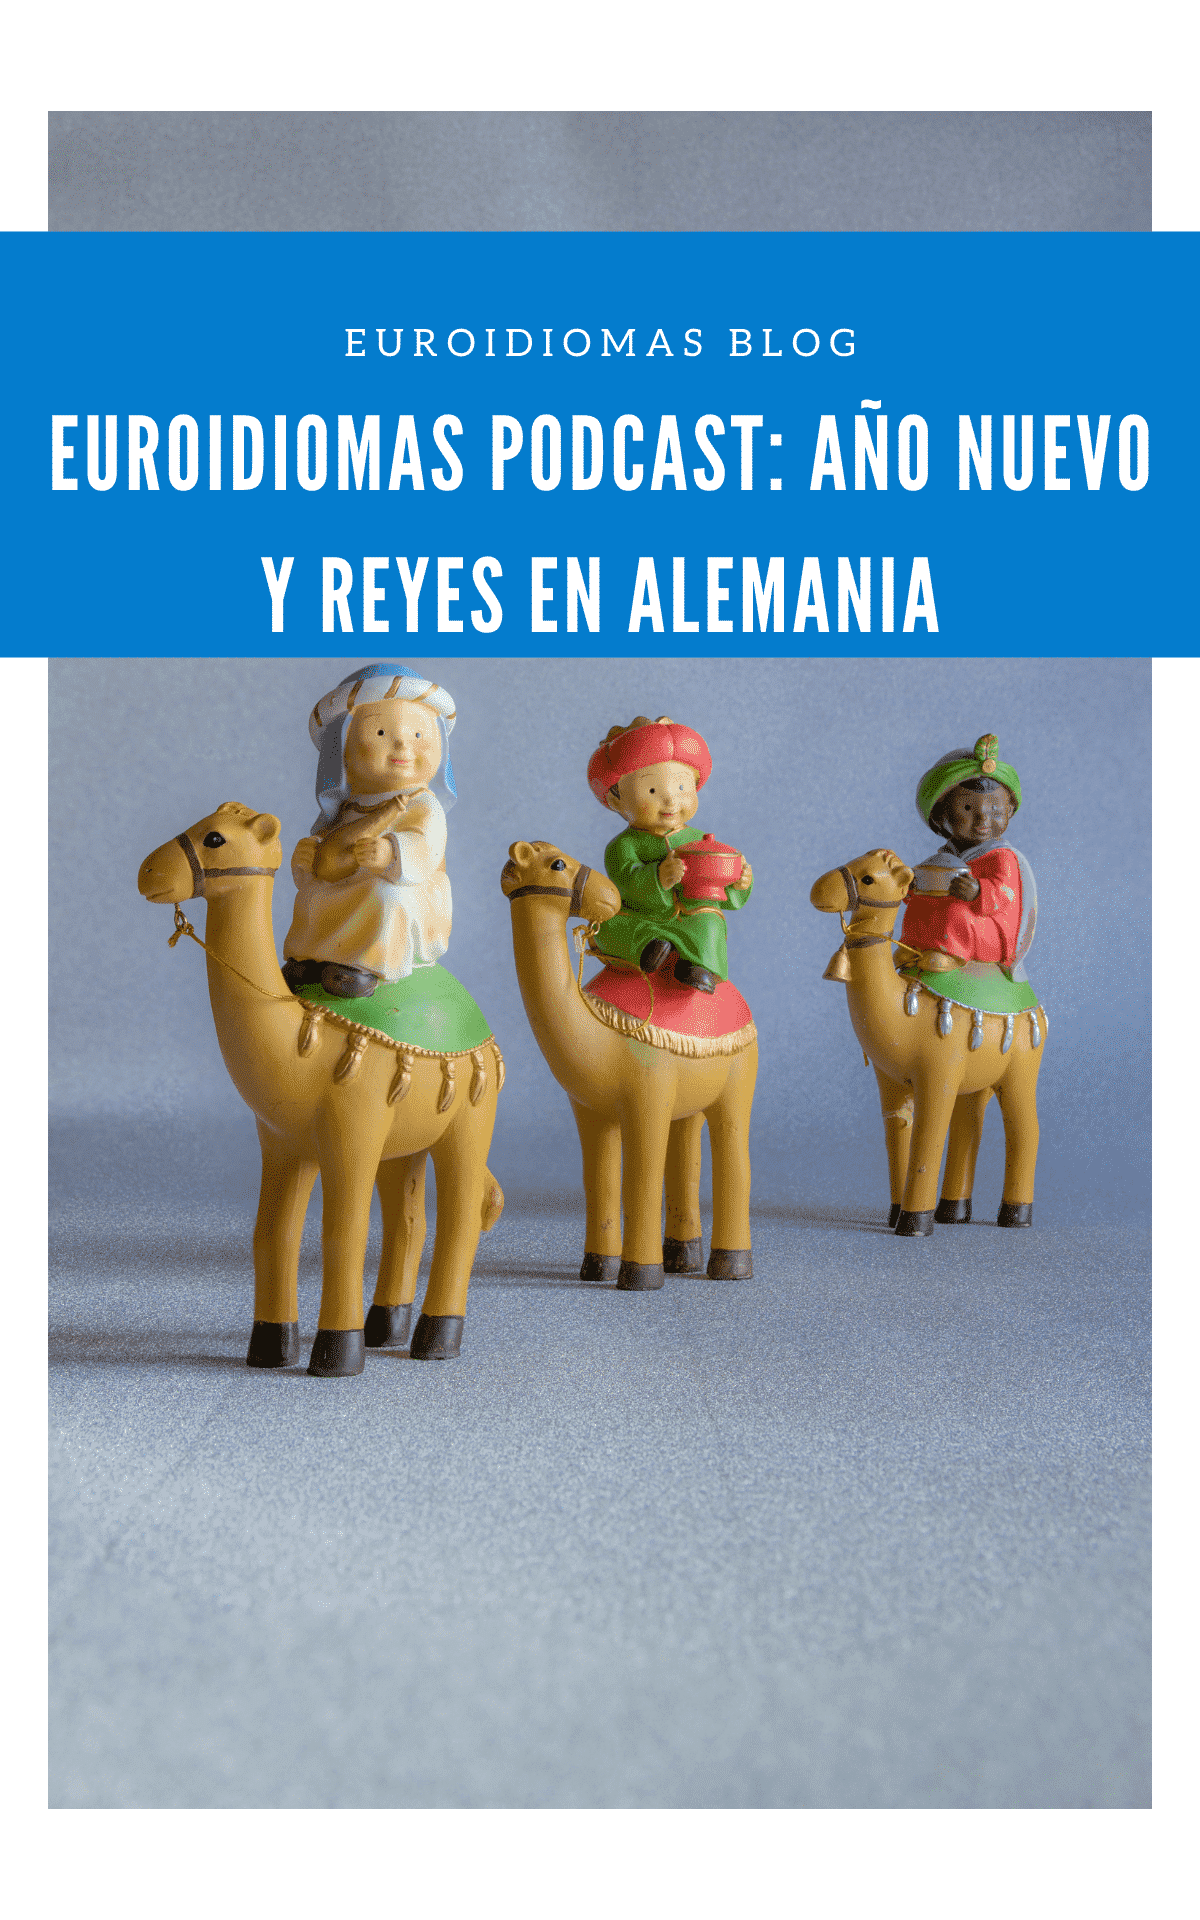 Euroidiomas Podcast: Año Nuevo y Reyes en Alemania